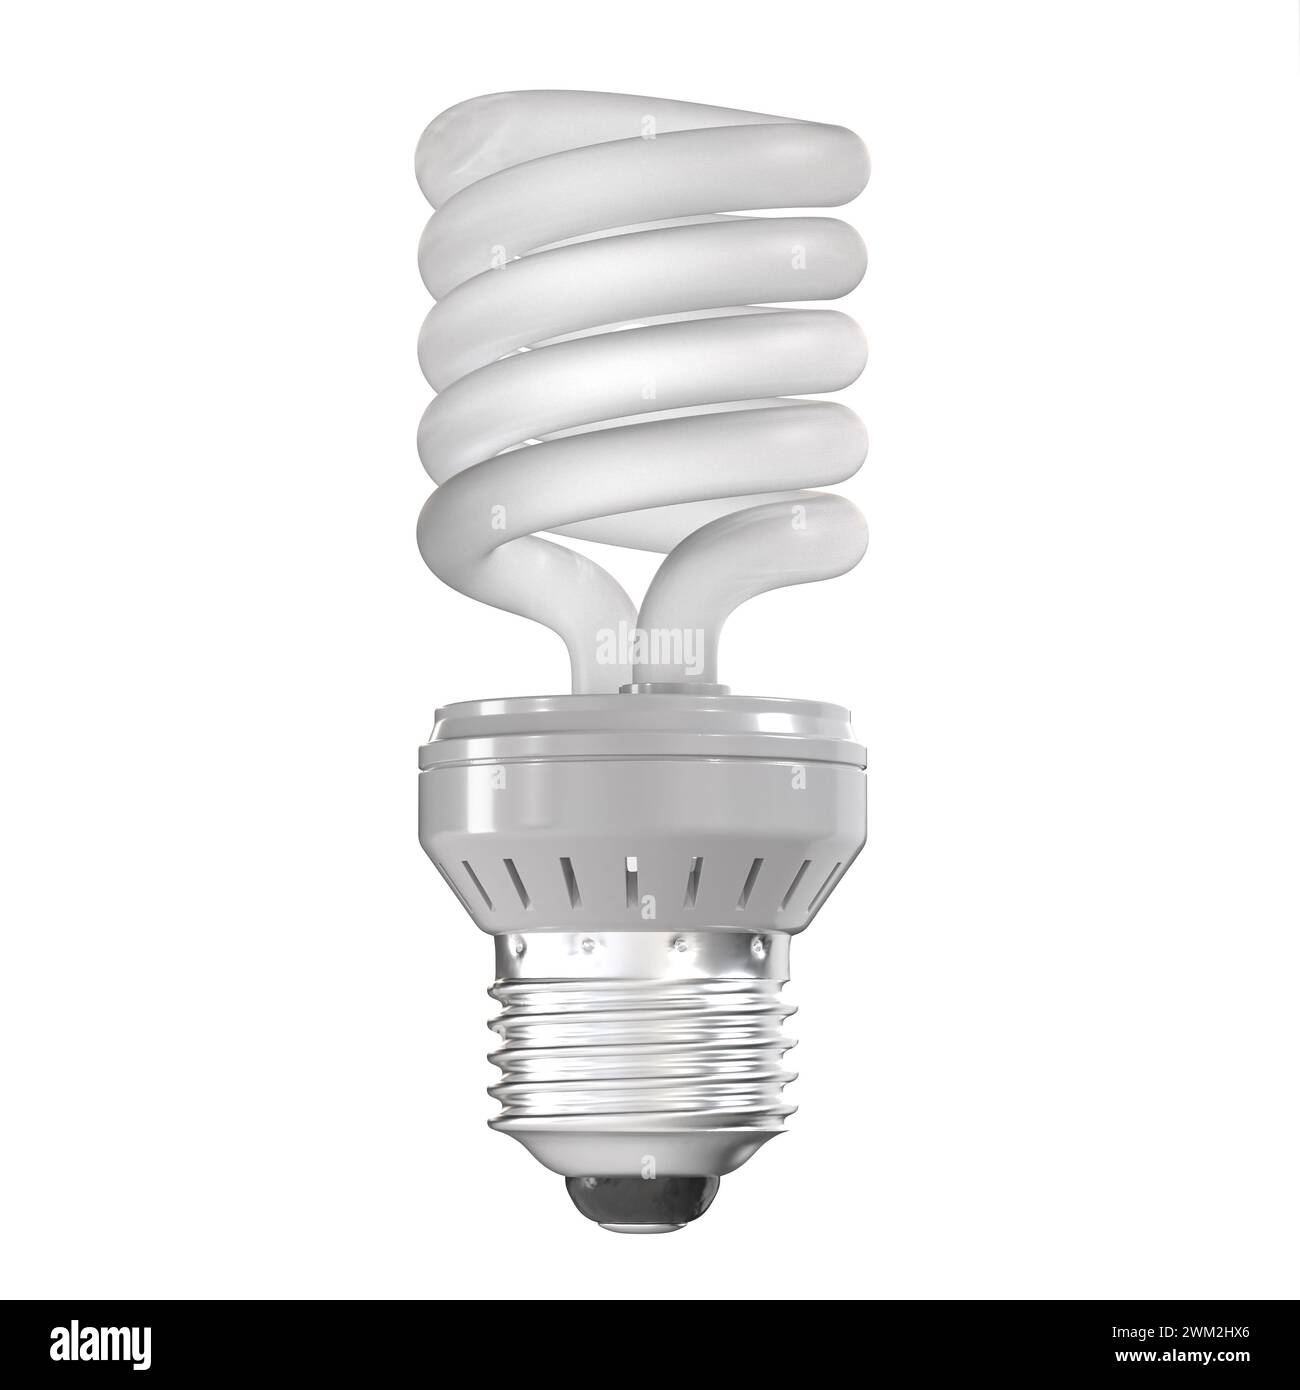 Lampadina fluorescente compatta, simbolo di risparmio energetico e rendering 3d con tecnologia ecocompatibile Foto Stock